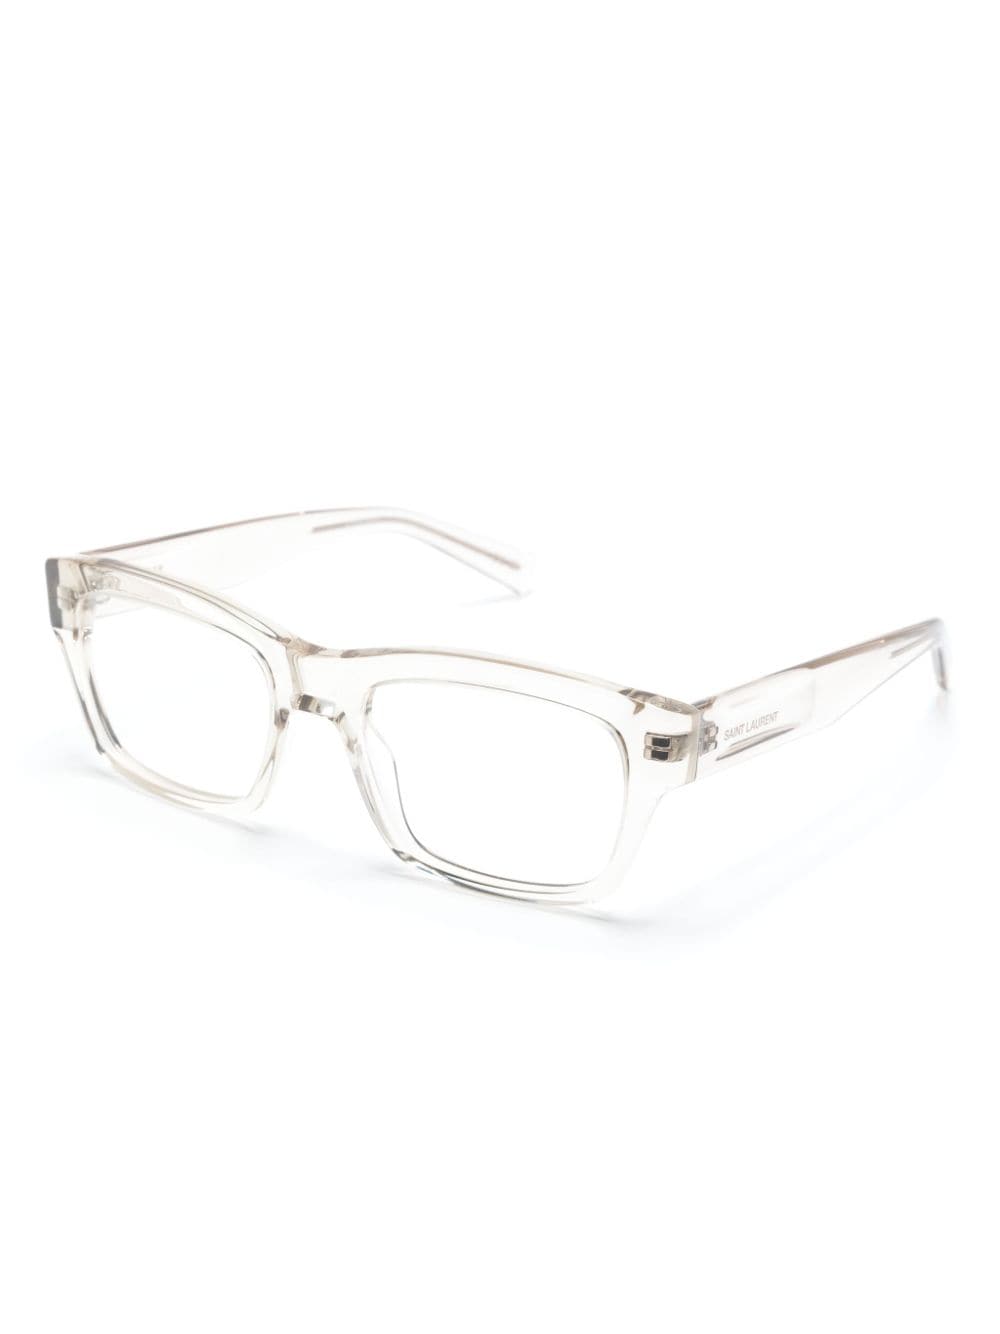 Saint Laurent Eyewear SL616 bril met vierkant montuur - Beige